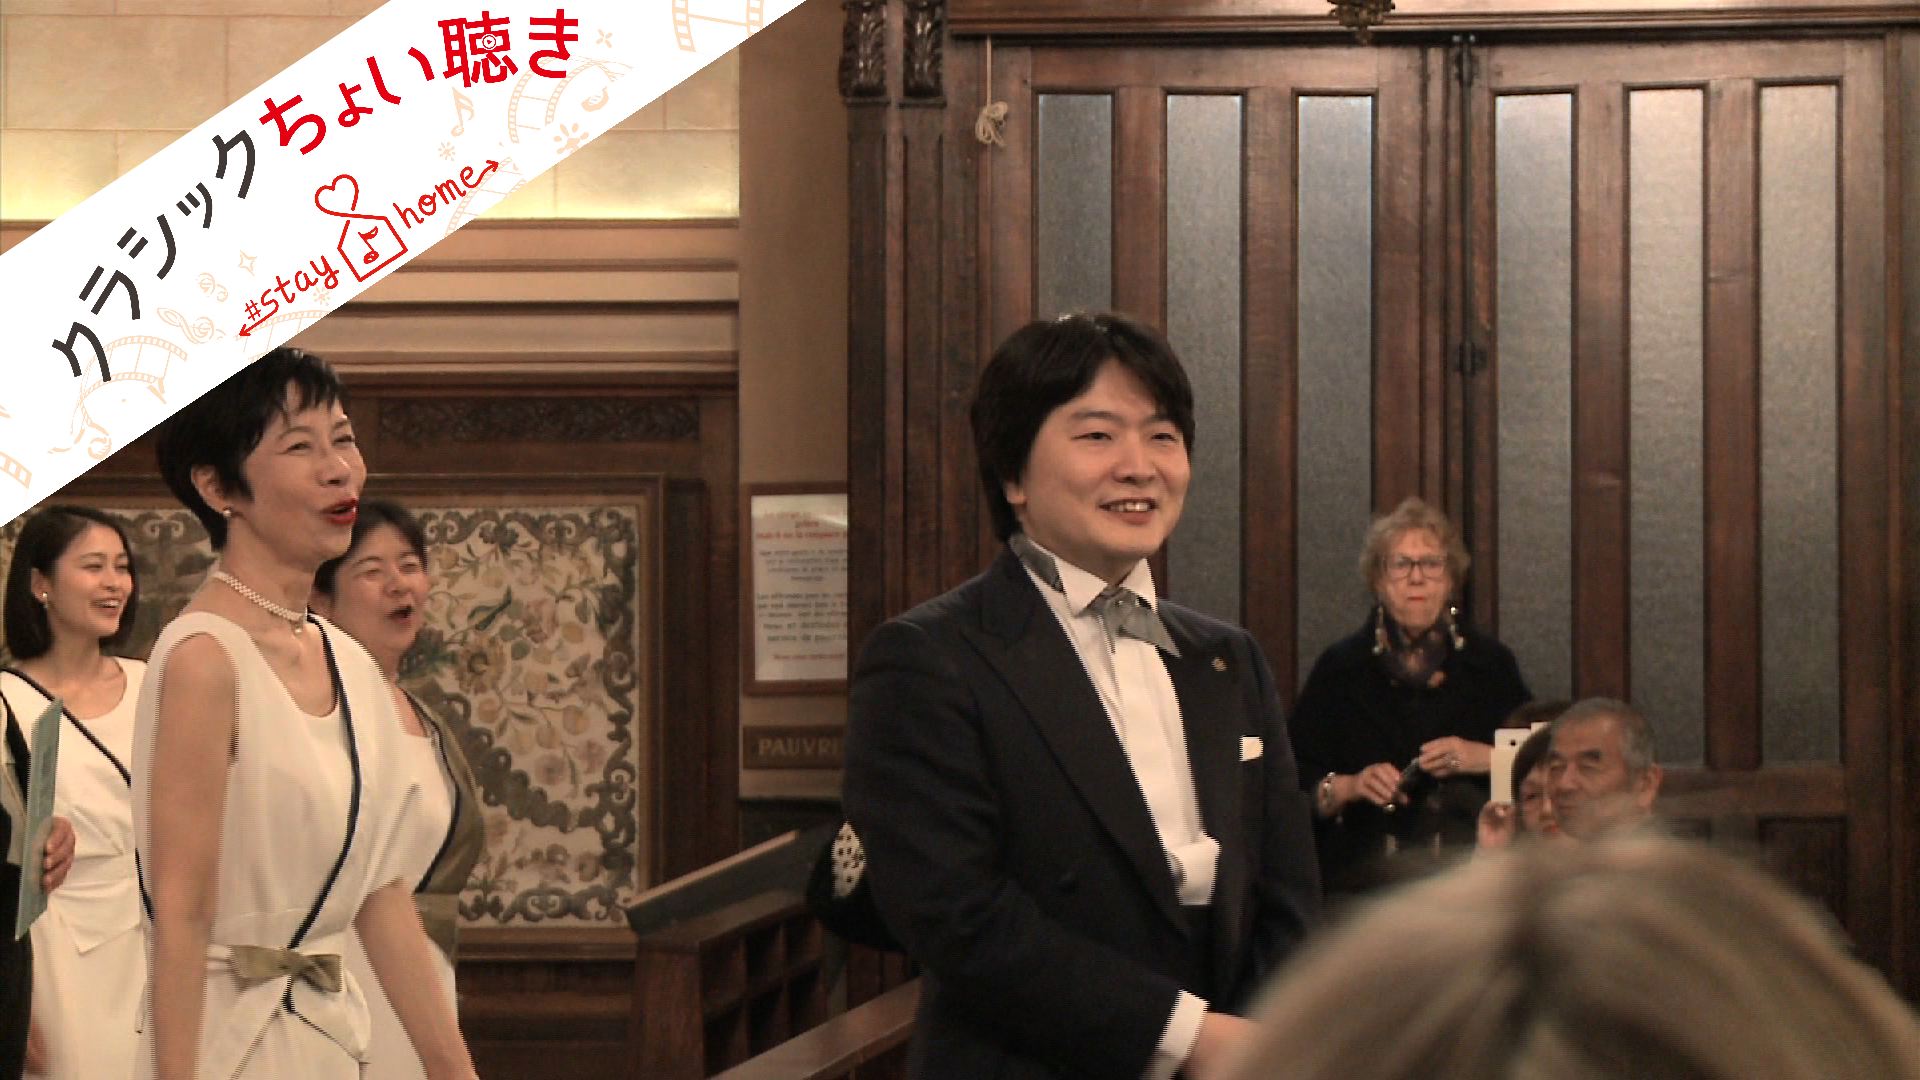 東京混声合唱団モナコ公演
指揮：山田和樹
武満 徹：《SONGS》より「◯と△のうた」（アンコール）
Kazuki Yamada, conductor
The Philharmonic Chorus of Tokyo
T. Takemitsu: 《SONGS》A Song of ○'s (Circles) and △'s(Triangles)